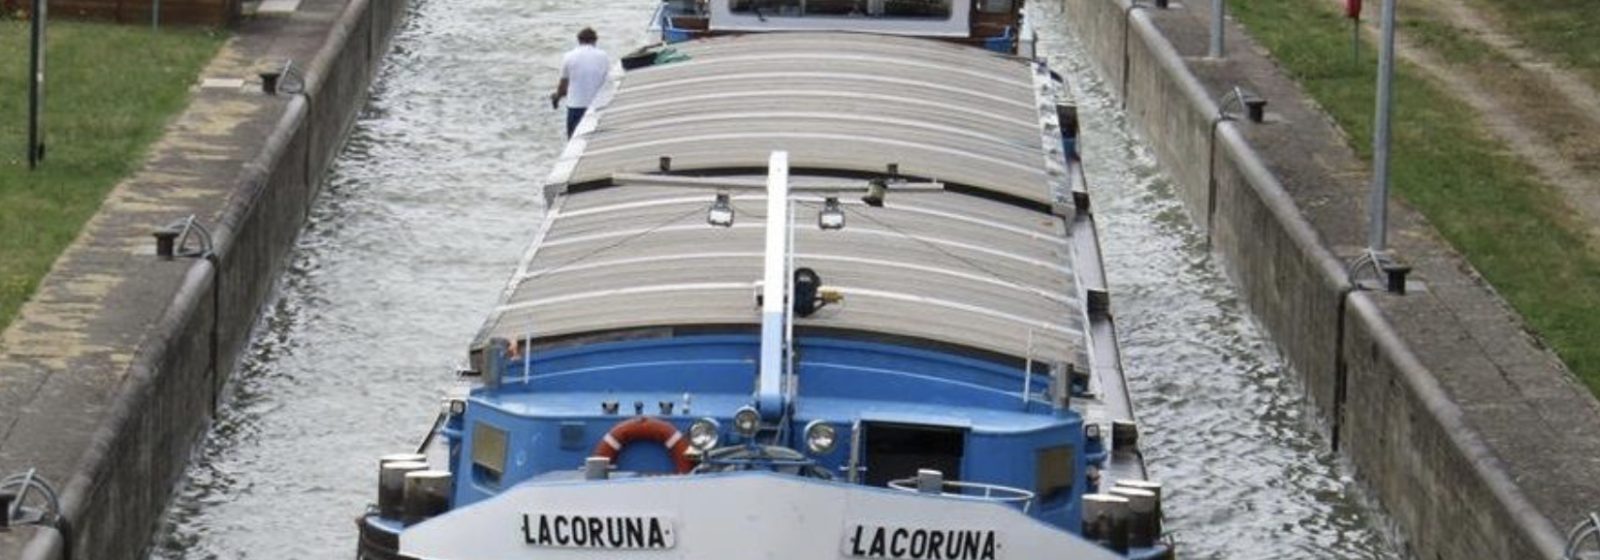 Het binnenschip 'La Coruna' vaart op HVO.